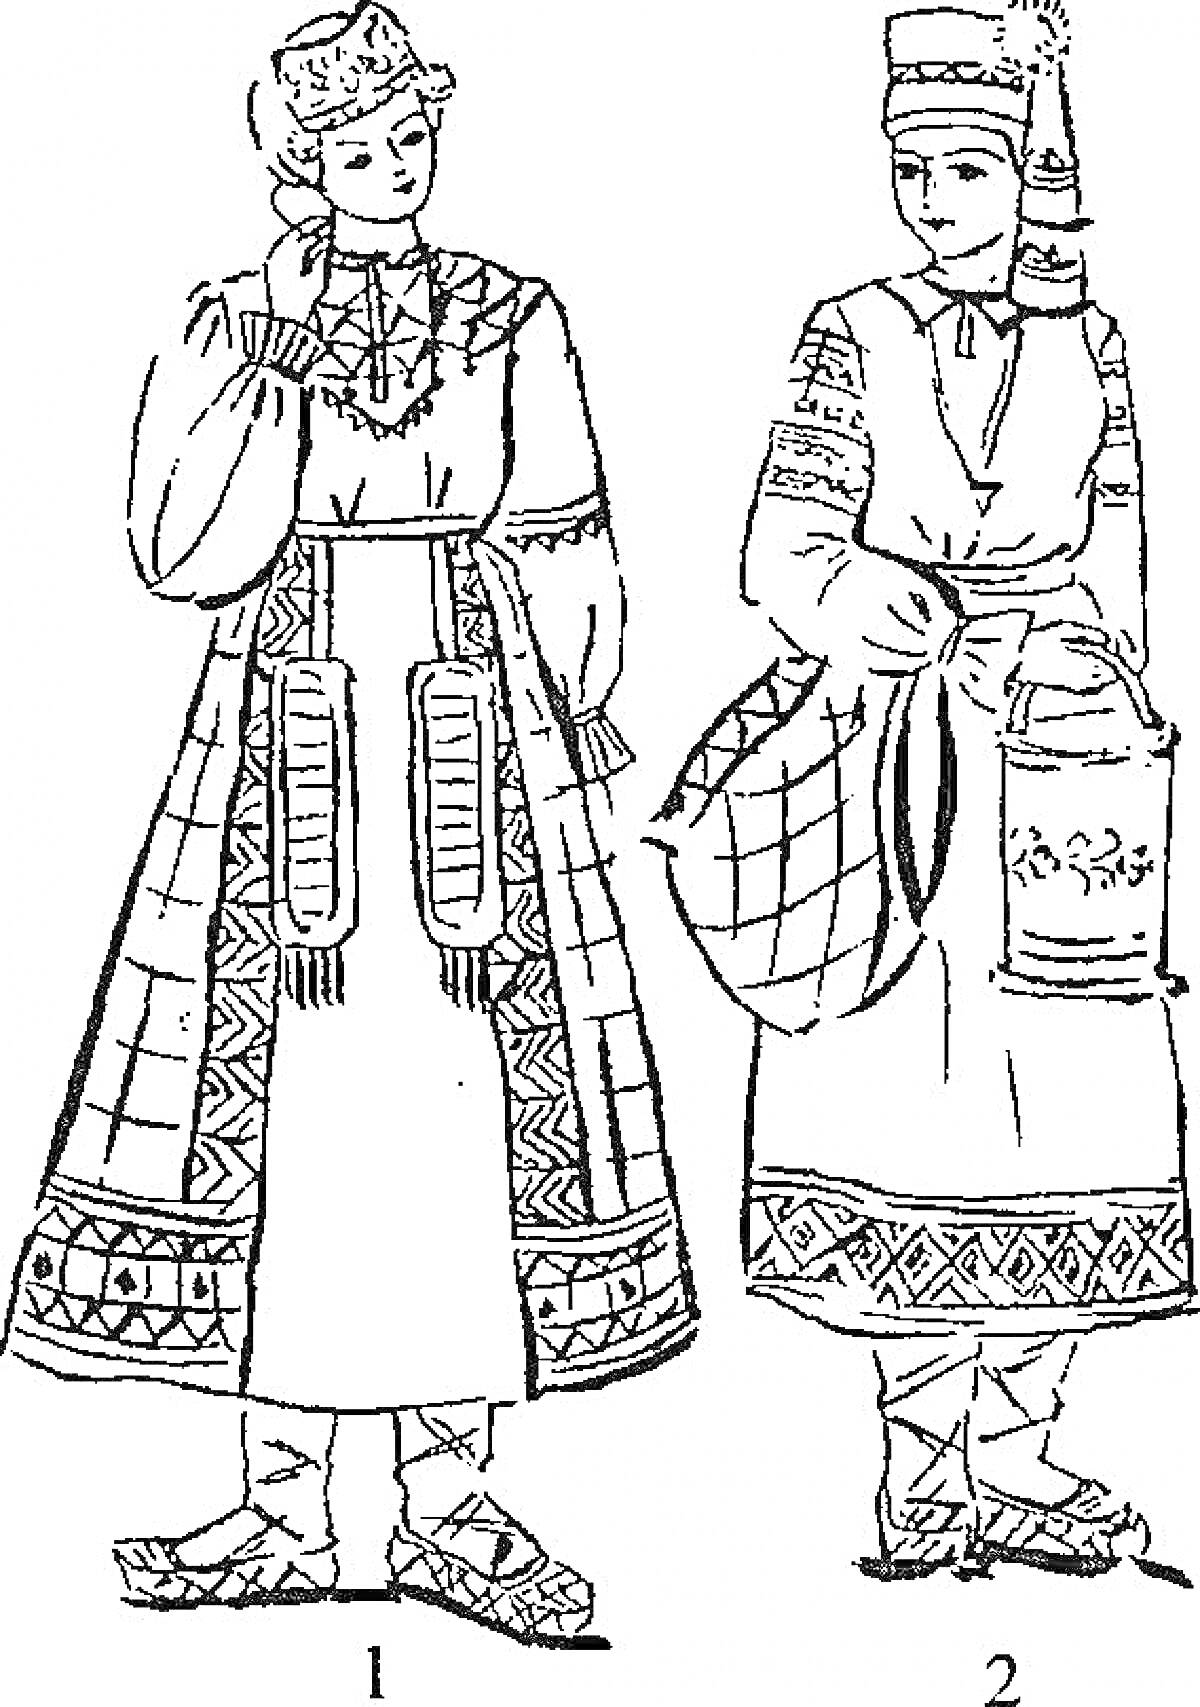 Раскраска Два женских русского народного костюма, включающие кокошник, расшитую рубашку, сарафан, пояс, обувь (лапти), и фартук на втором костюме